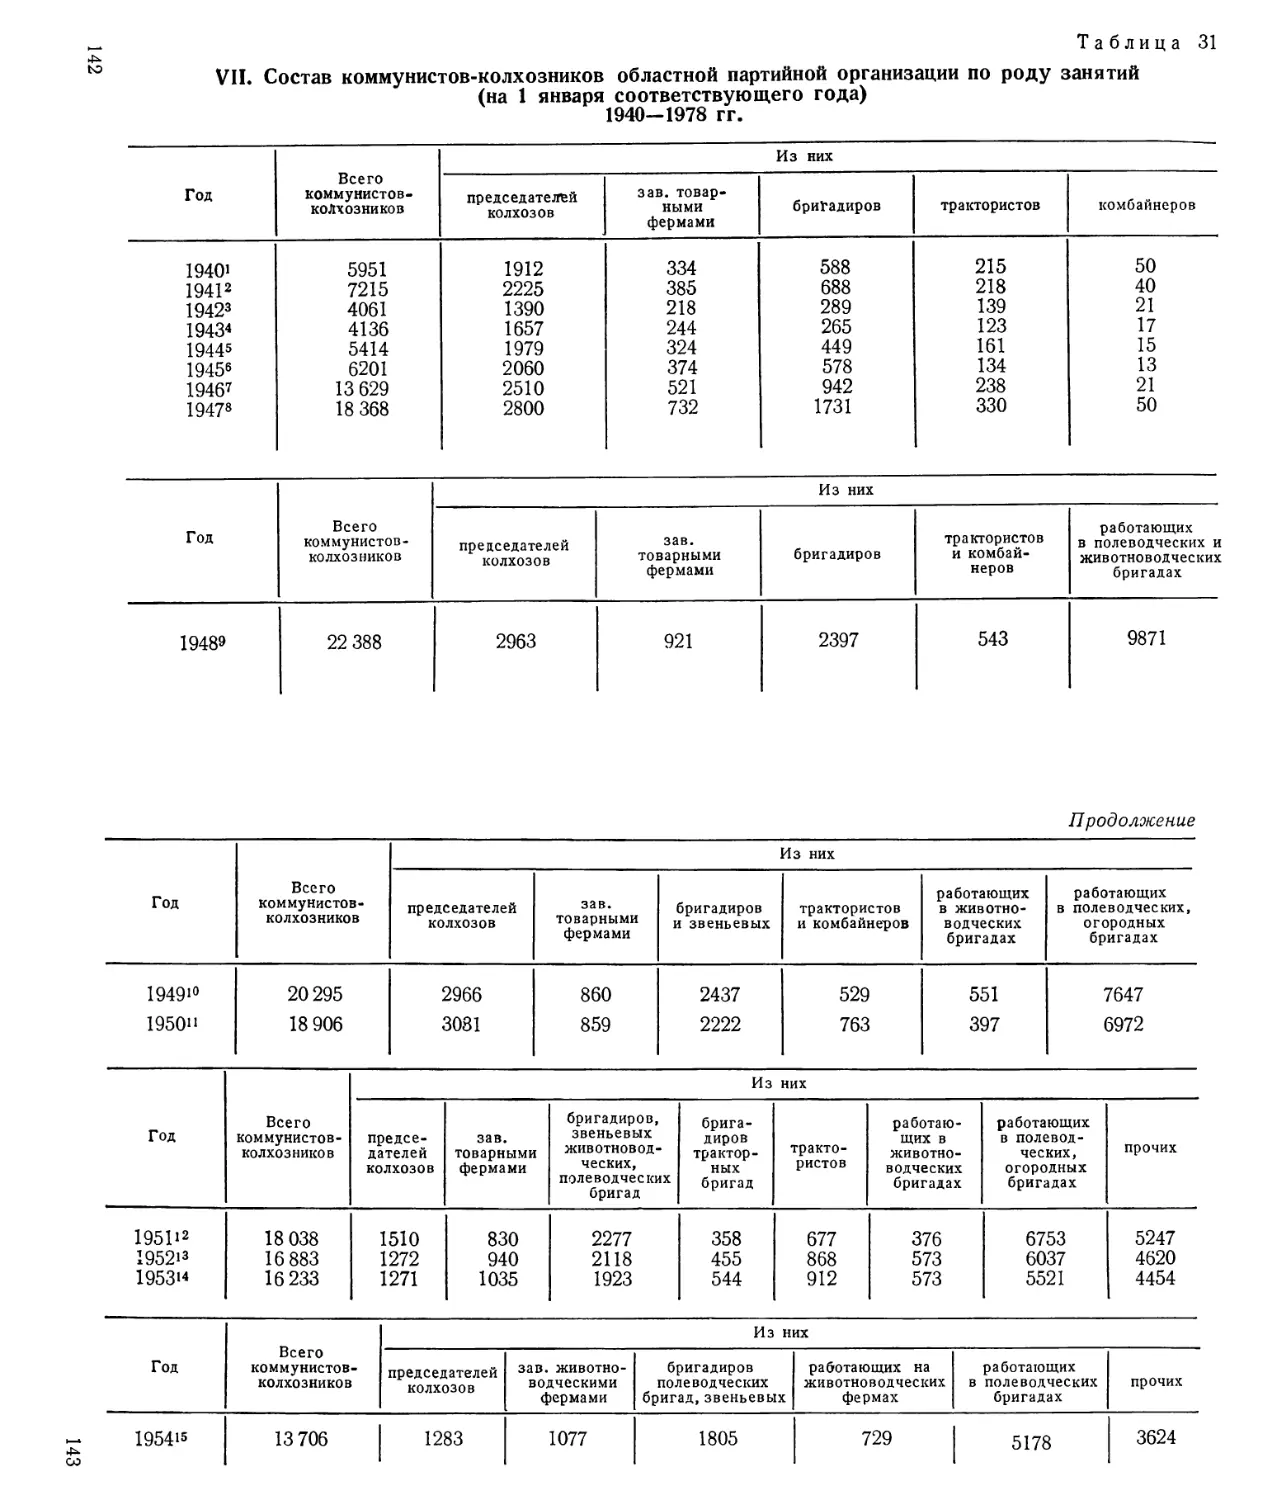 Состав коммунистов-колхозников по роду занятий 1940—1978 гг. Таблица 31